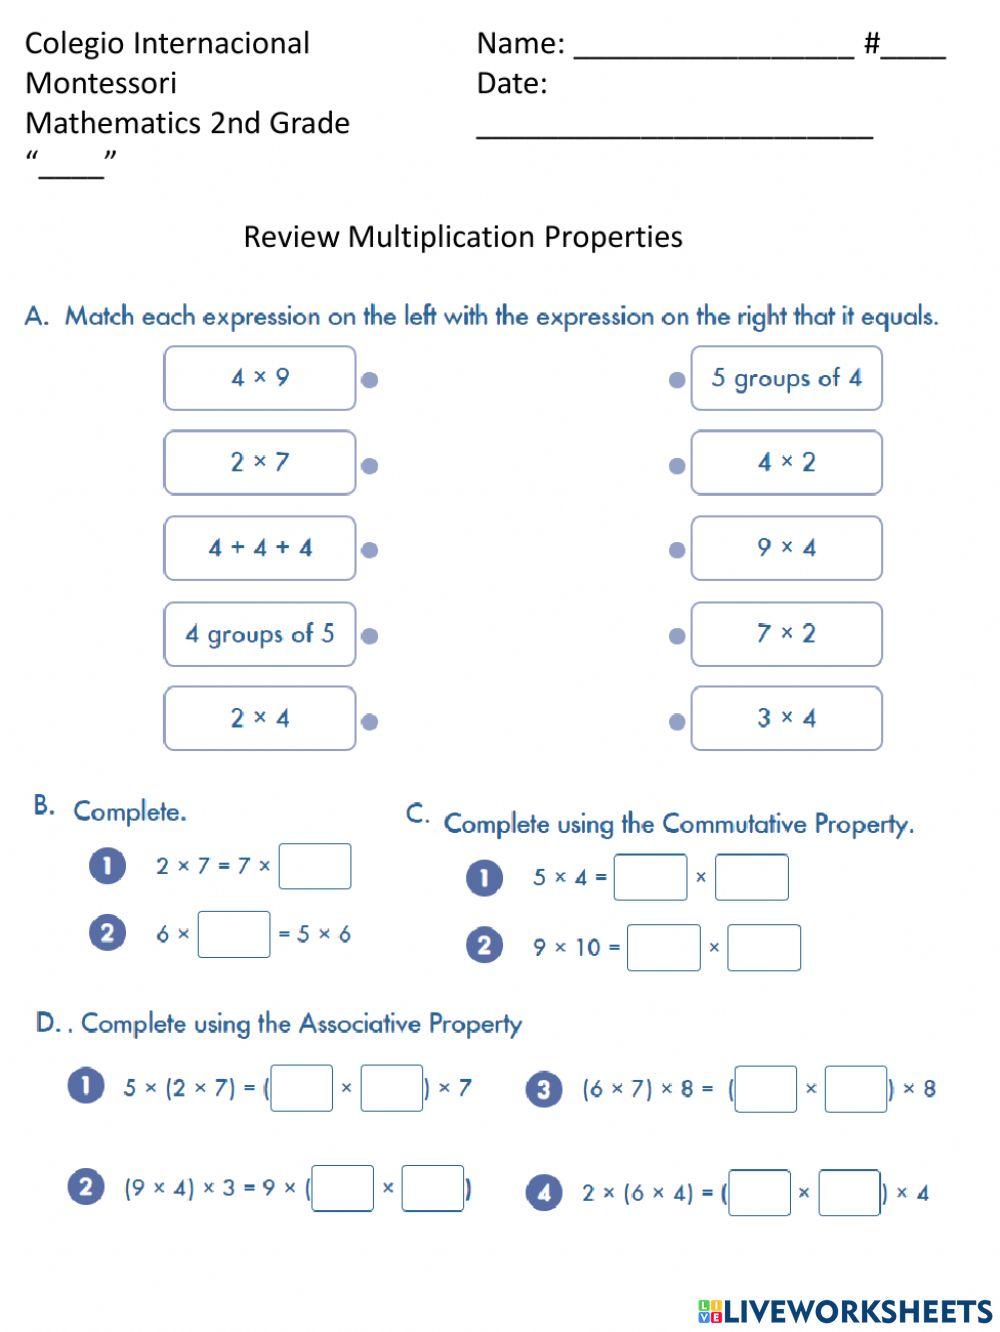 Worksheet multiplication properties